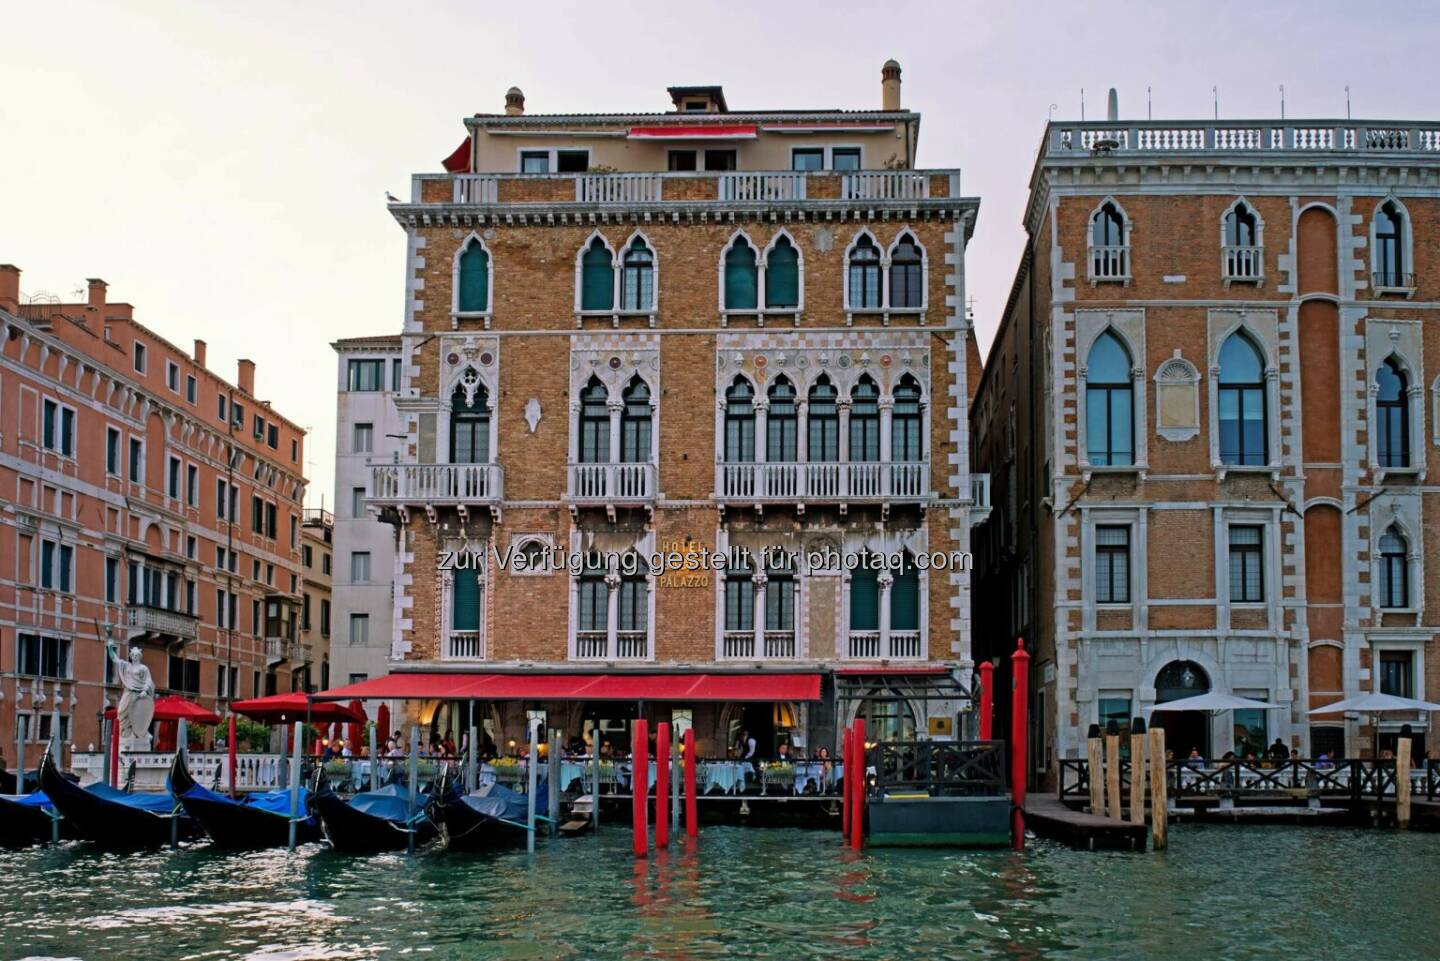 MRP hotels: MRP hotels betreut das weltbekannte Hotel Bauer in Venedig.